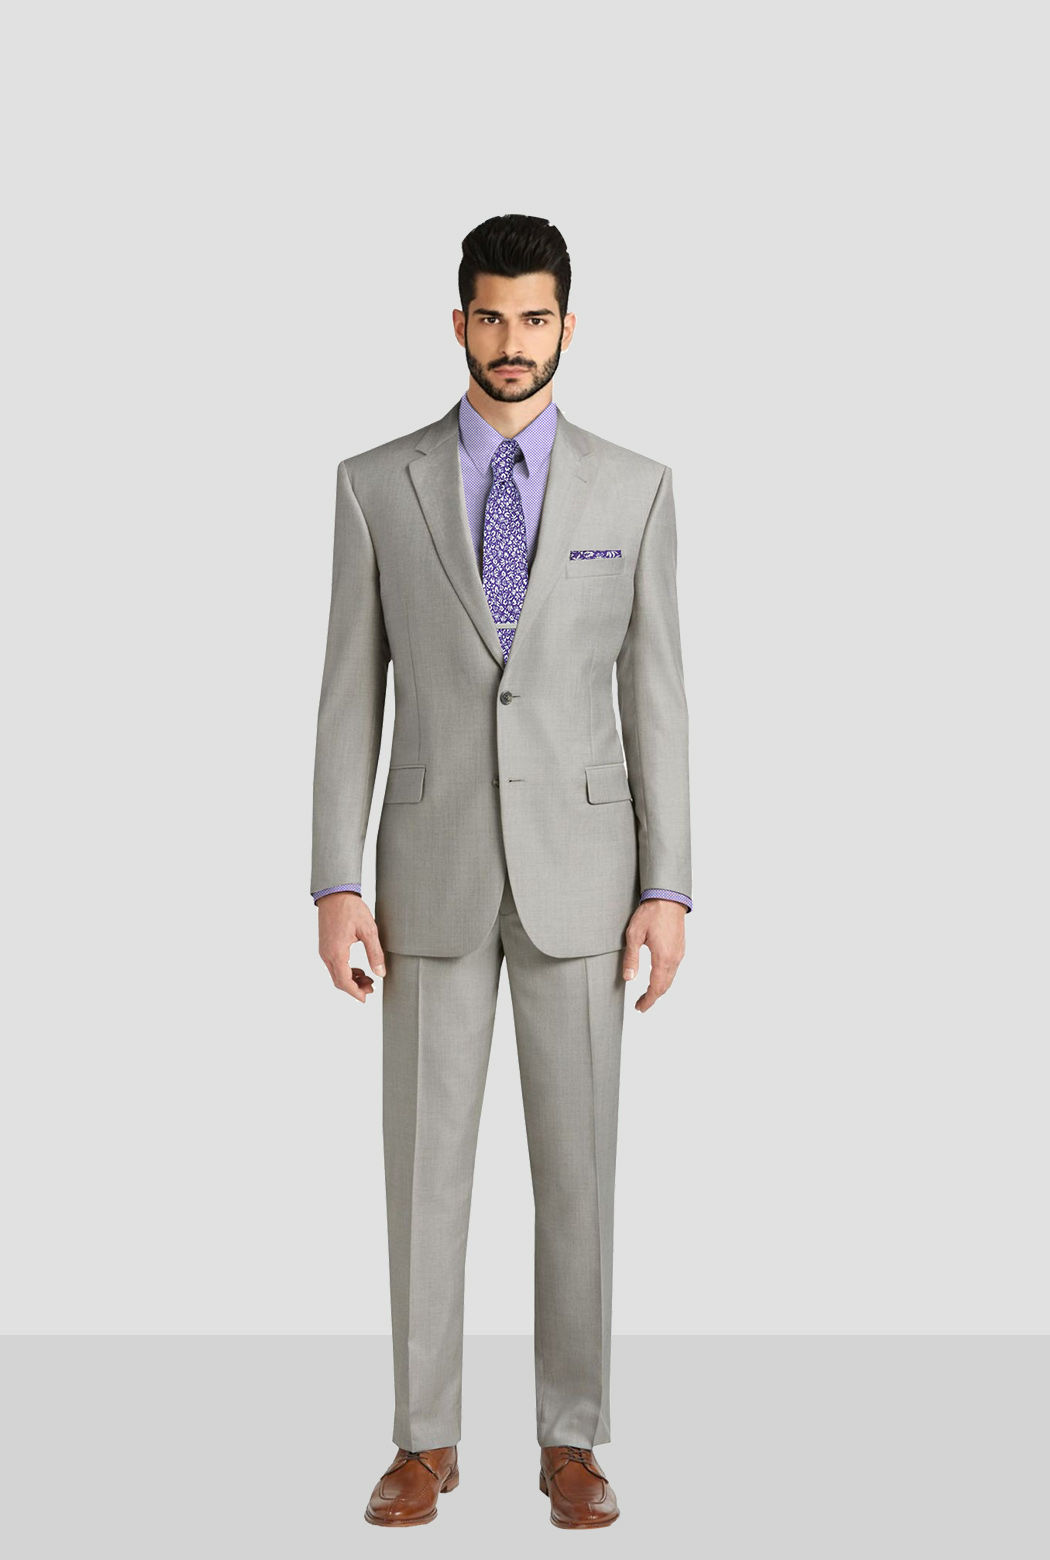 Light Gray Plaid Suit - Men's Custom Suits - Fraternity Suits